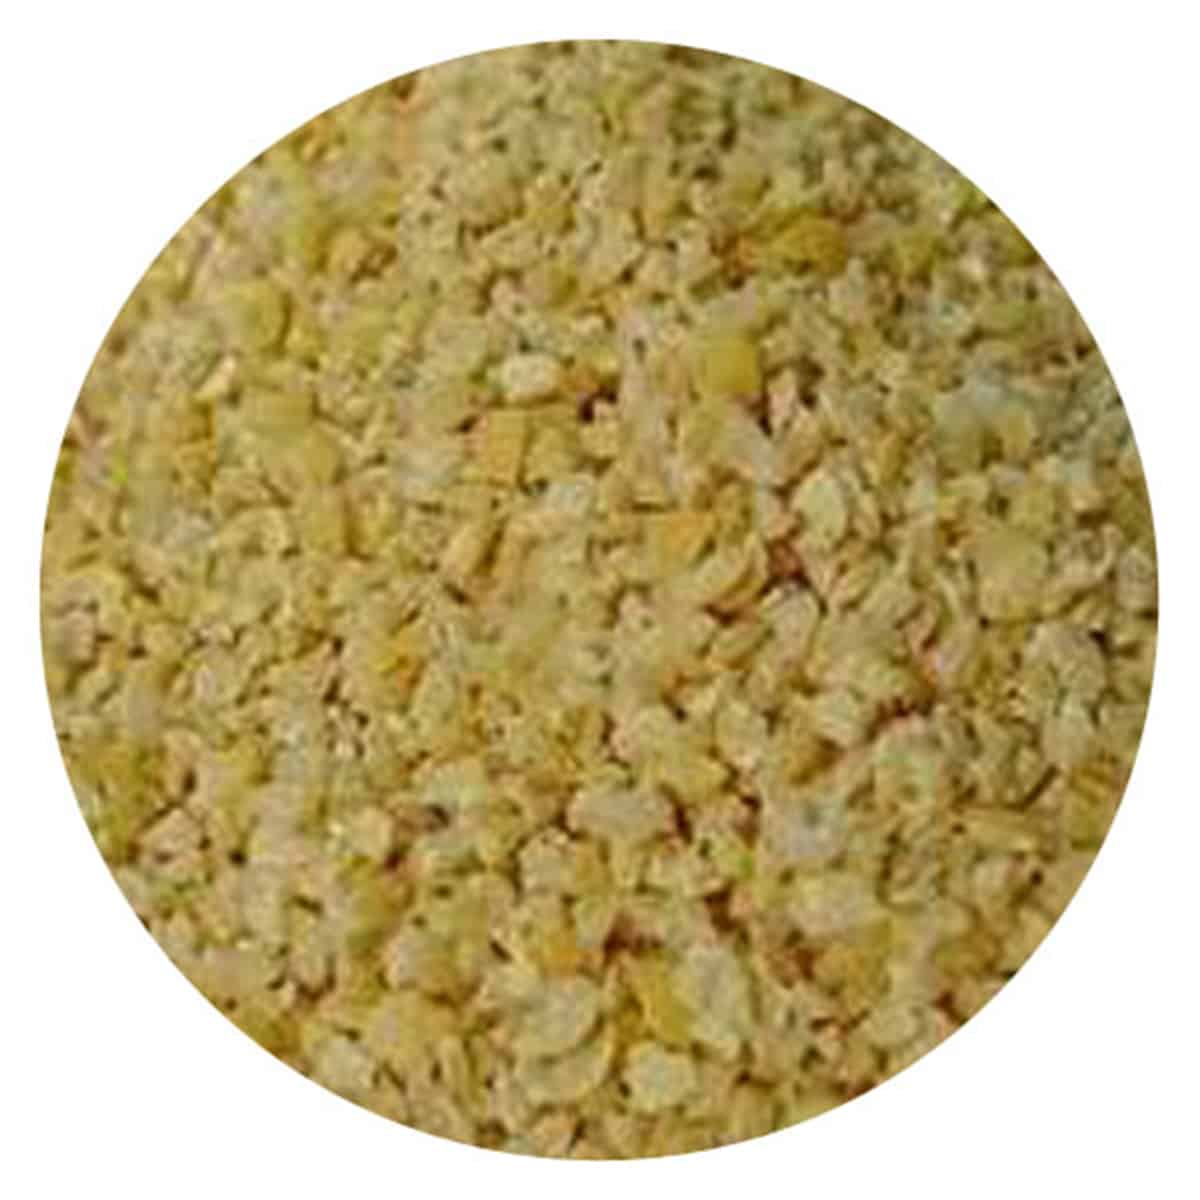 Buy IAG Foods Soya Granules - 1 kg